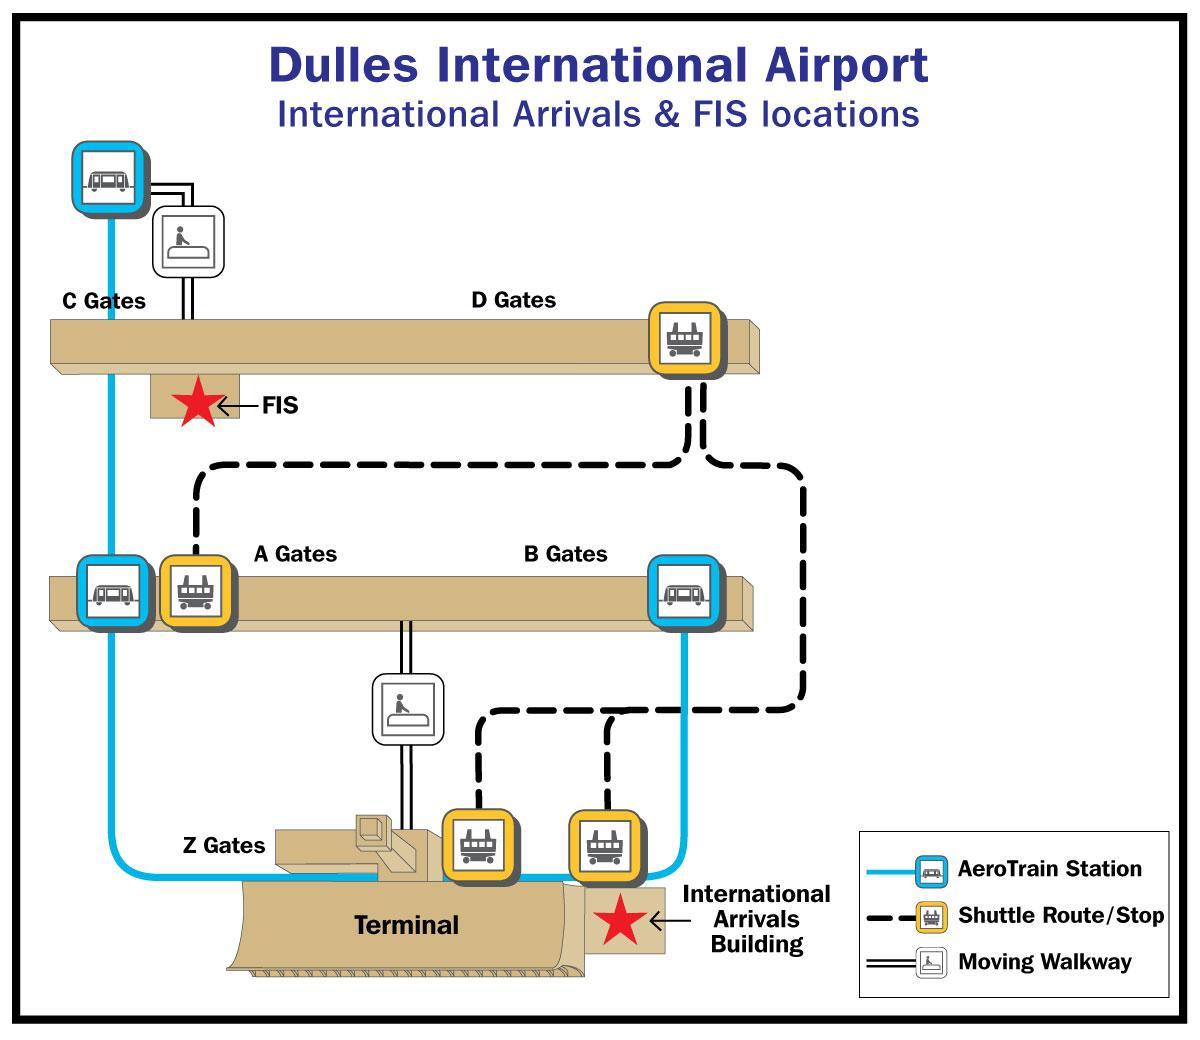 ڈلاس ائرپورٹ ہوائی اڈے کے گیٹ نقشہ